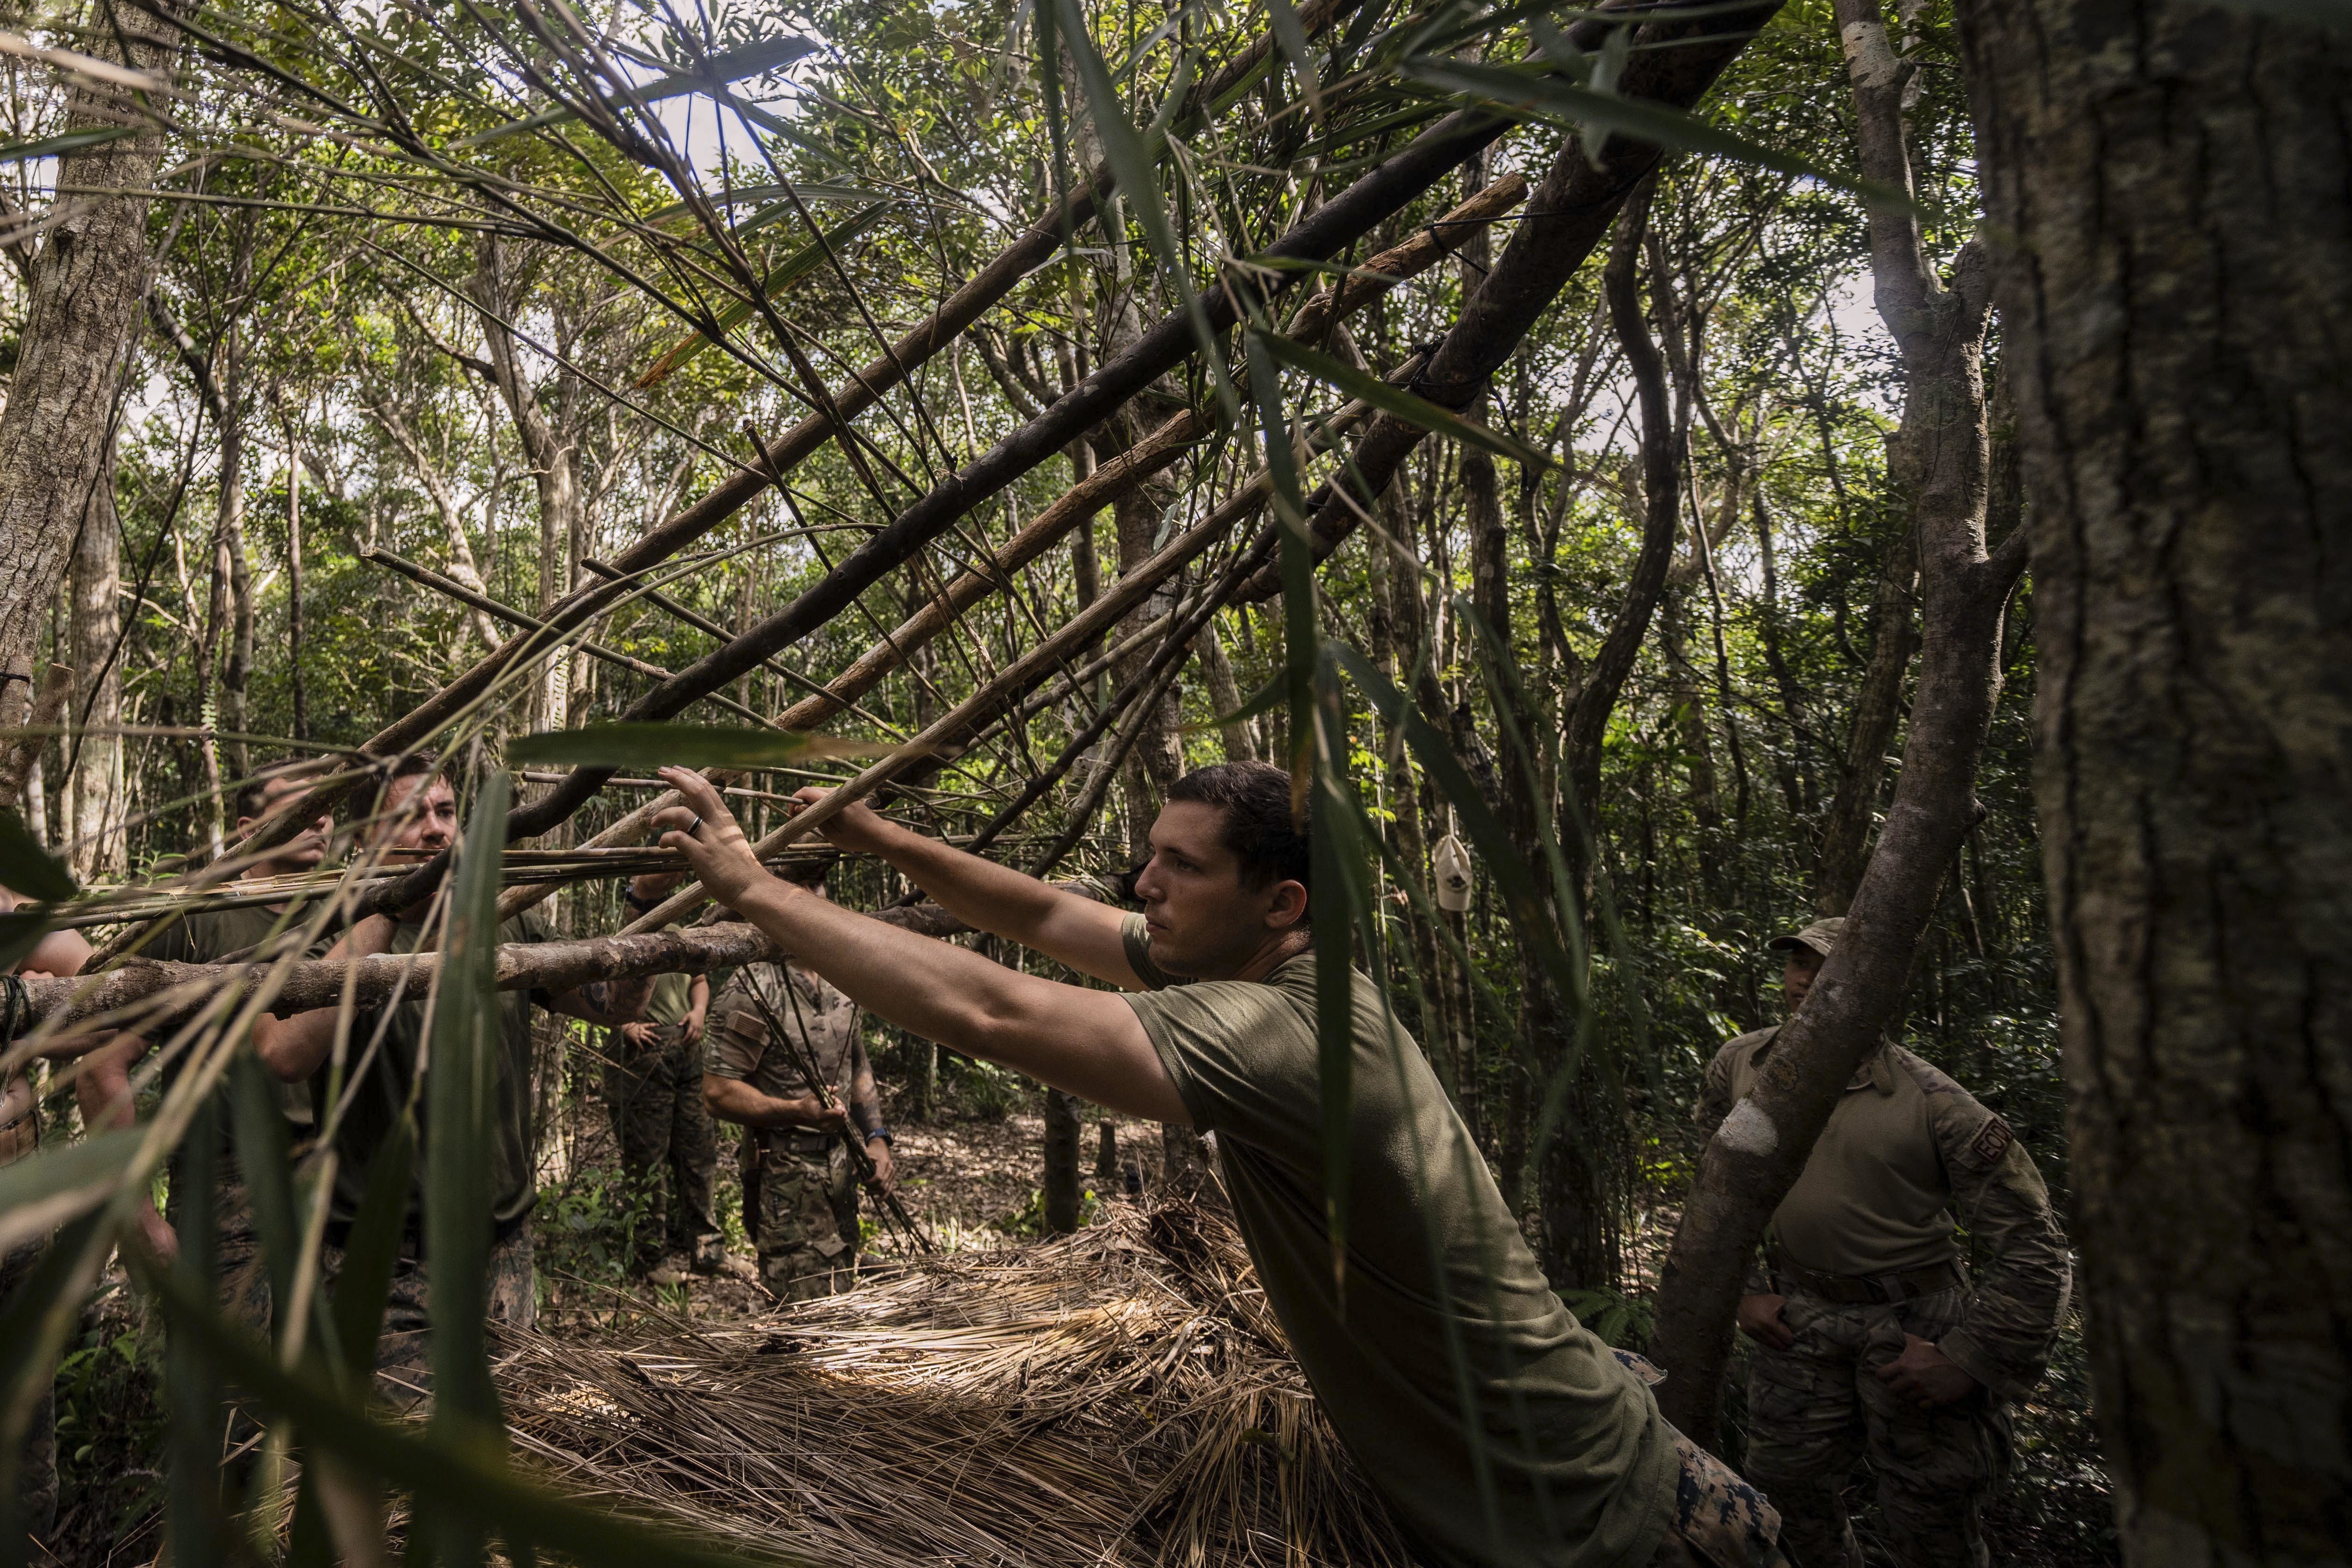 jungle survival shelter